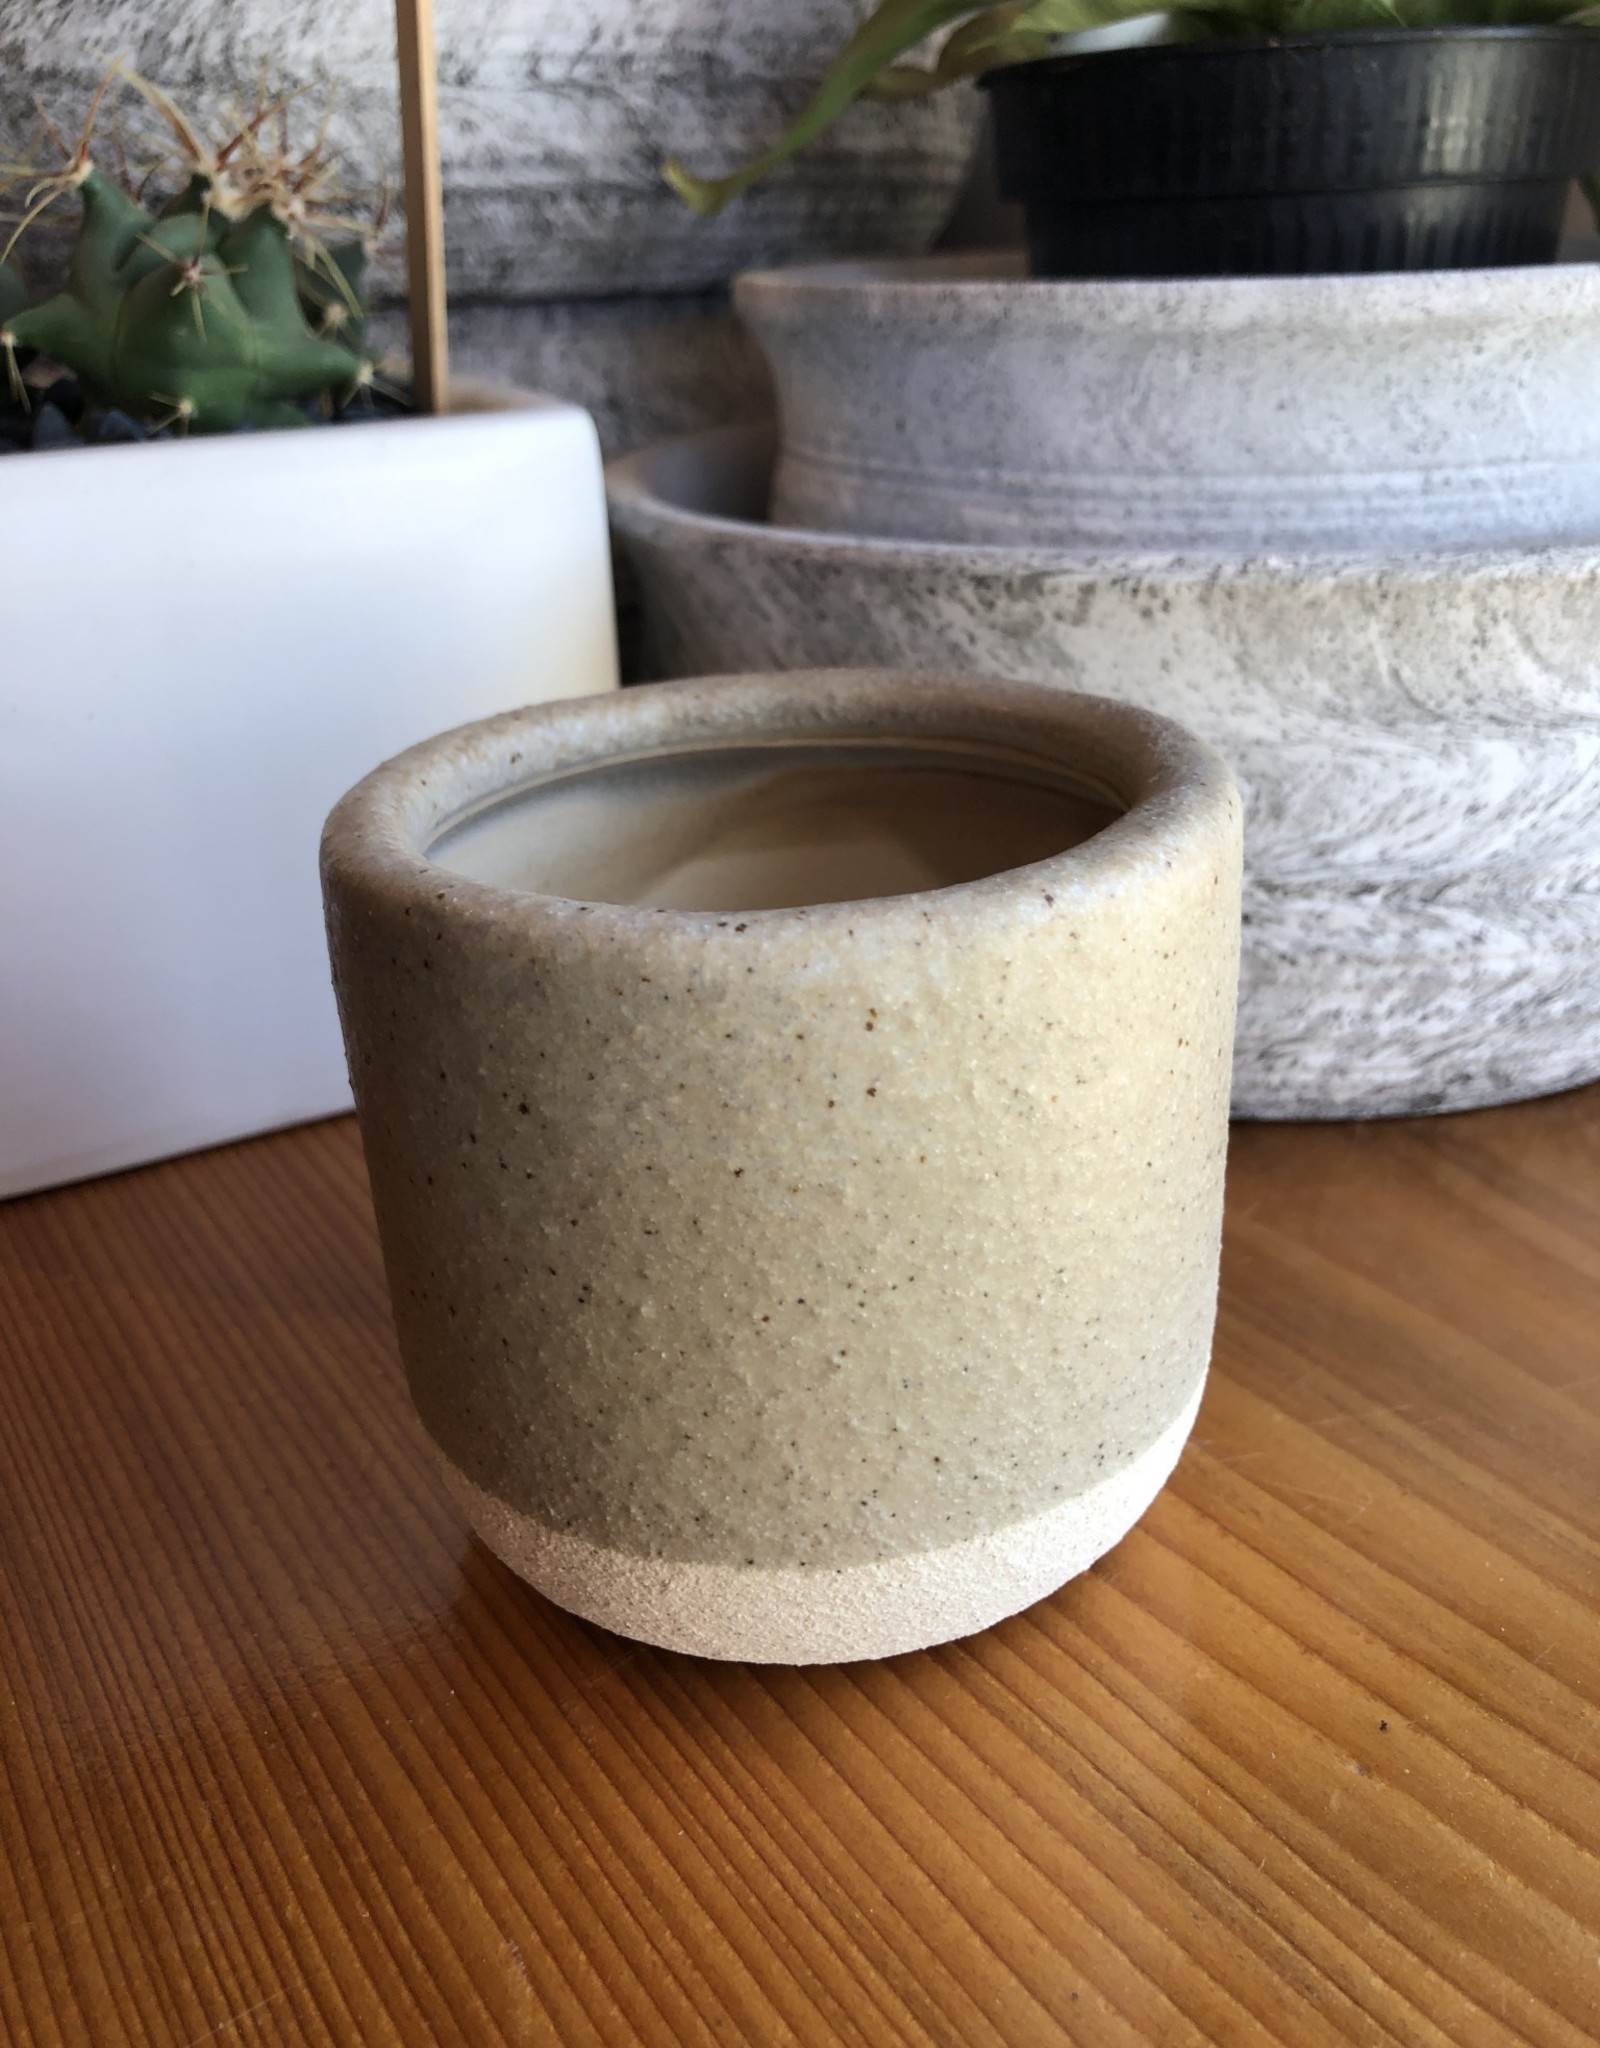 Emilia Ceramic Vase 3.25 inch